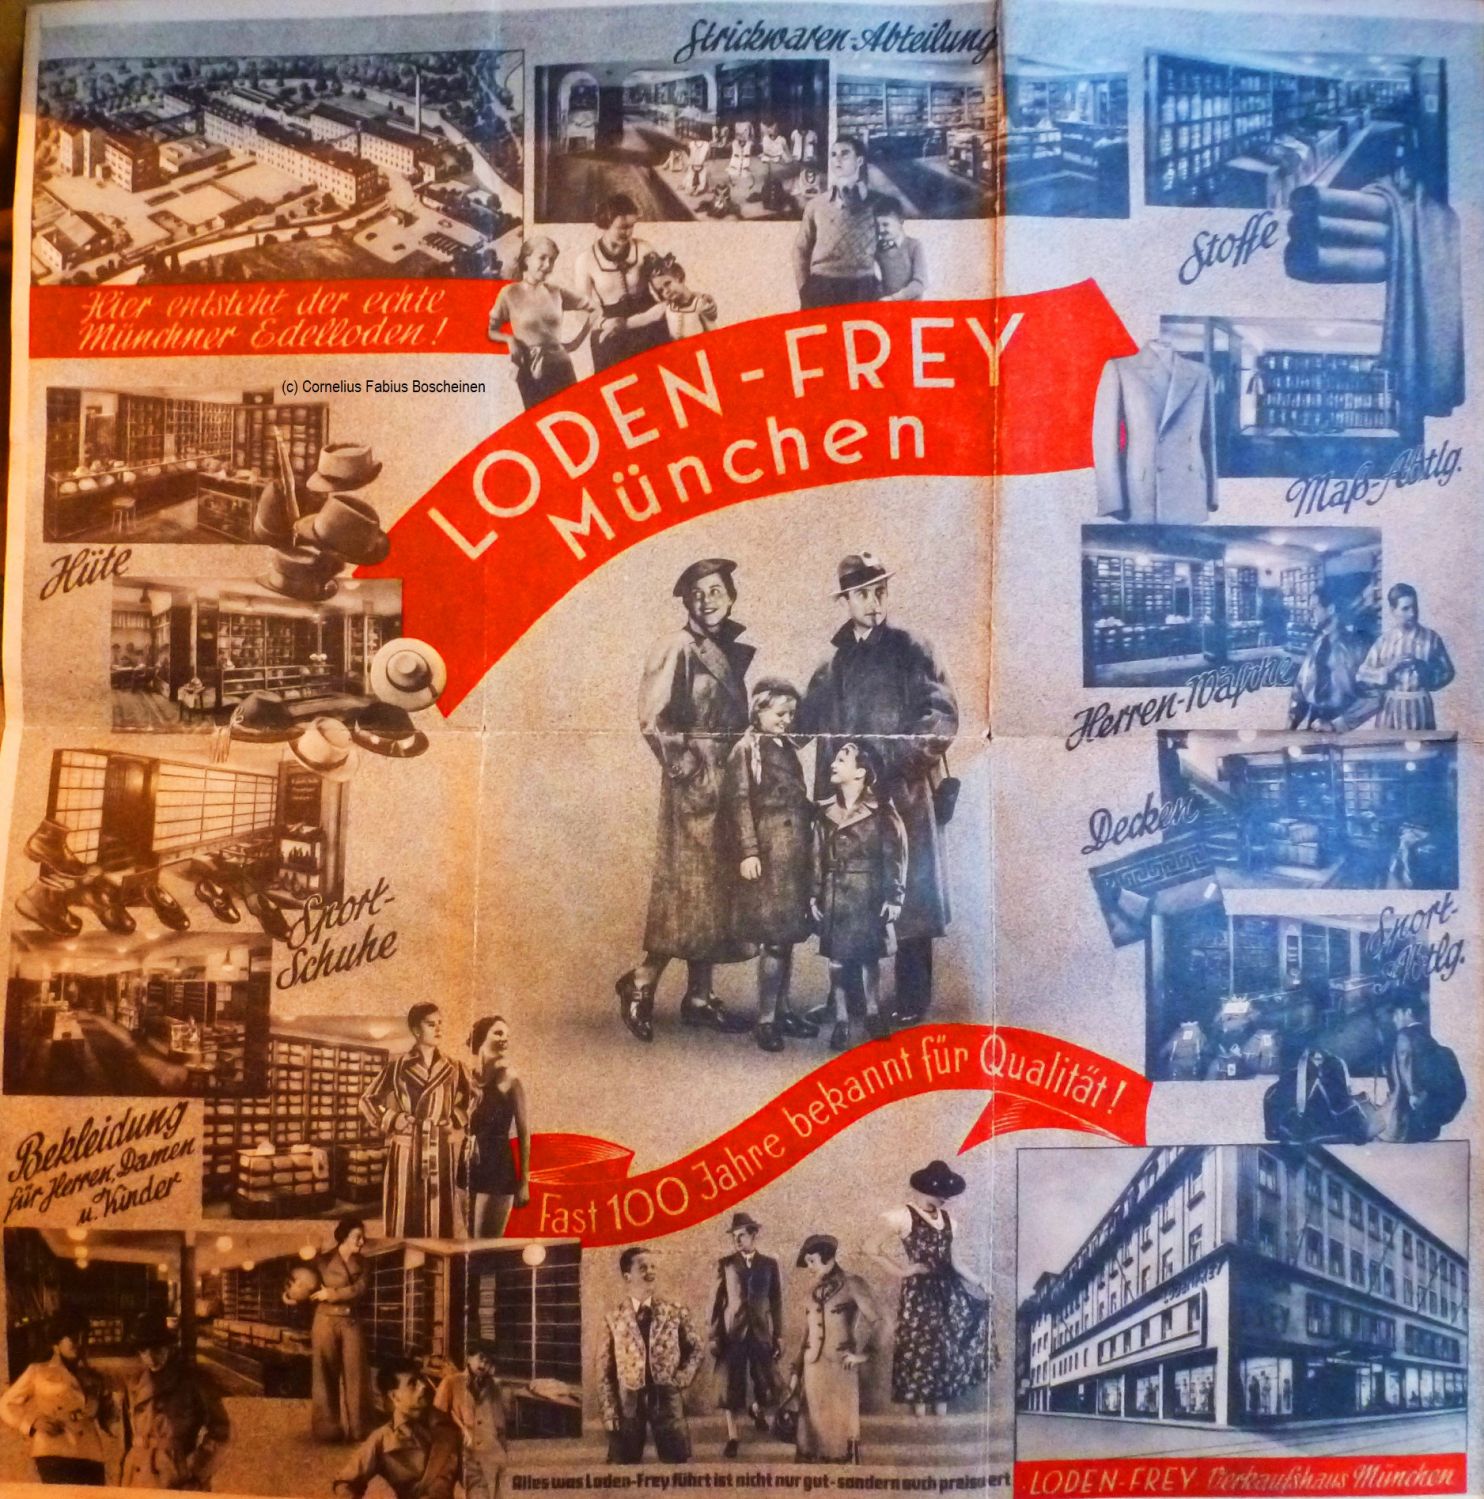 Stadtführer und Werbung von Lodenfrey als Faltplan. 1933-1945